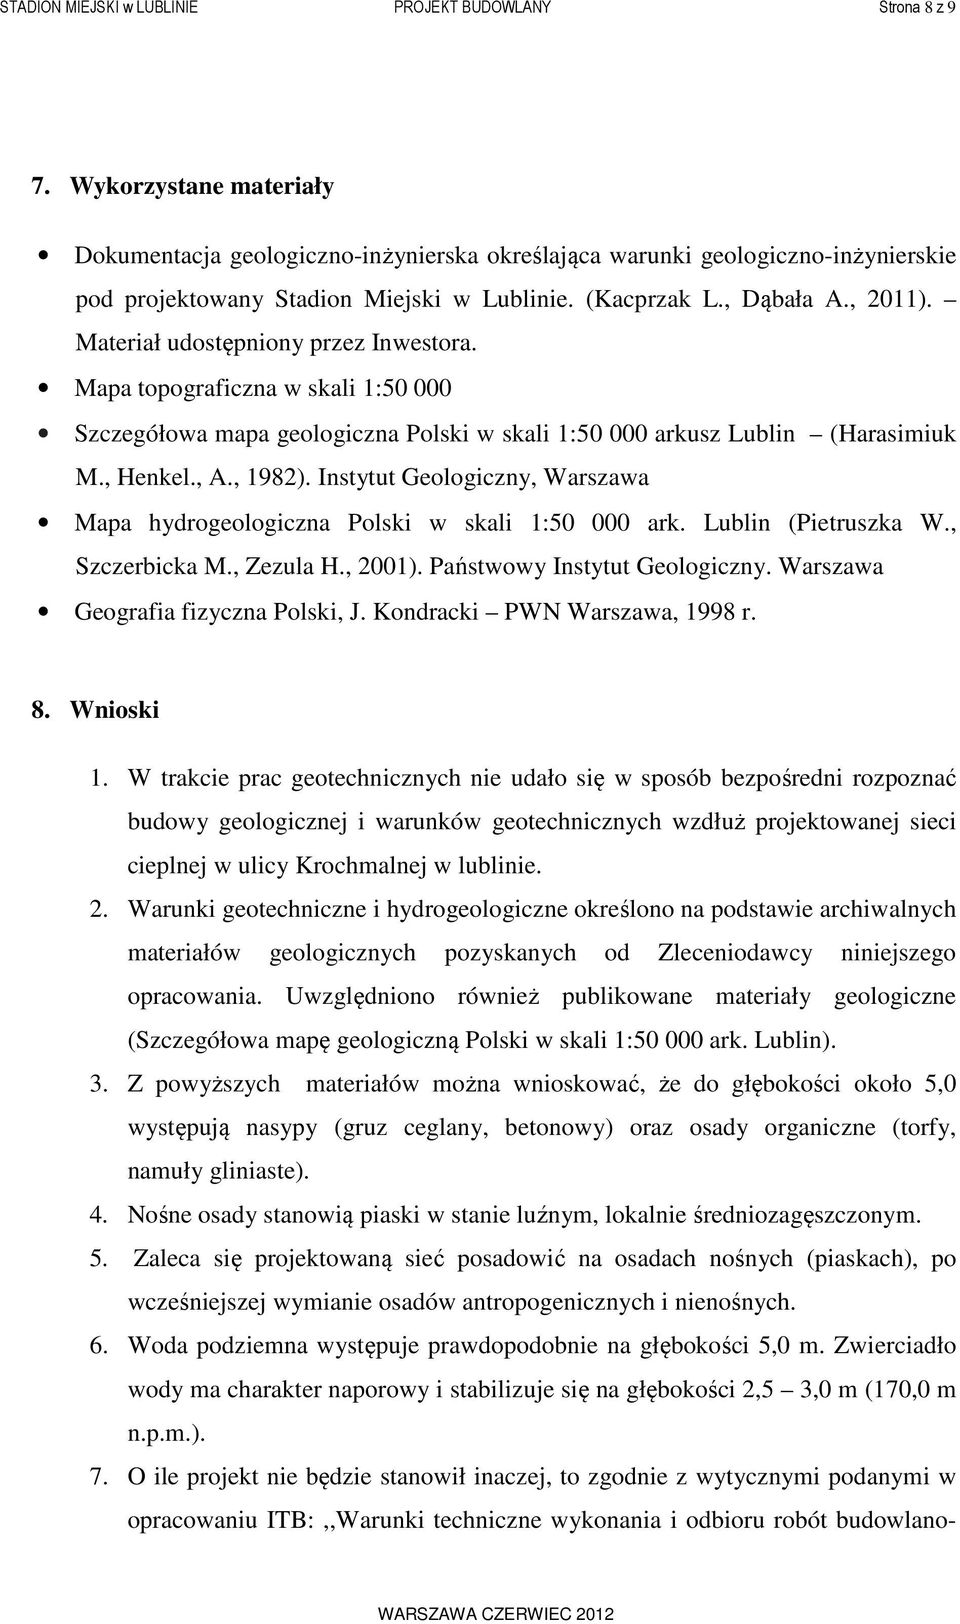 Materiał udostępniony przez Inwestora. Mapa topograficzna w skali 1:50 000 Szczegółowa mapa geologiczna Polski w skali 1:50 000 arkusz Lublin (Harasimiuk M., Henkel., A., 1982).